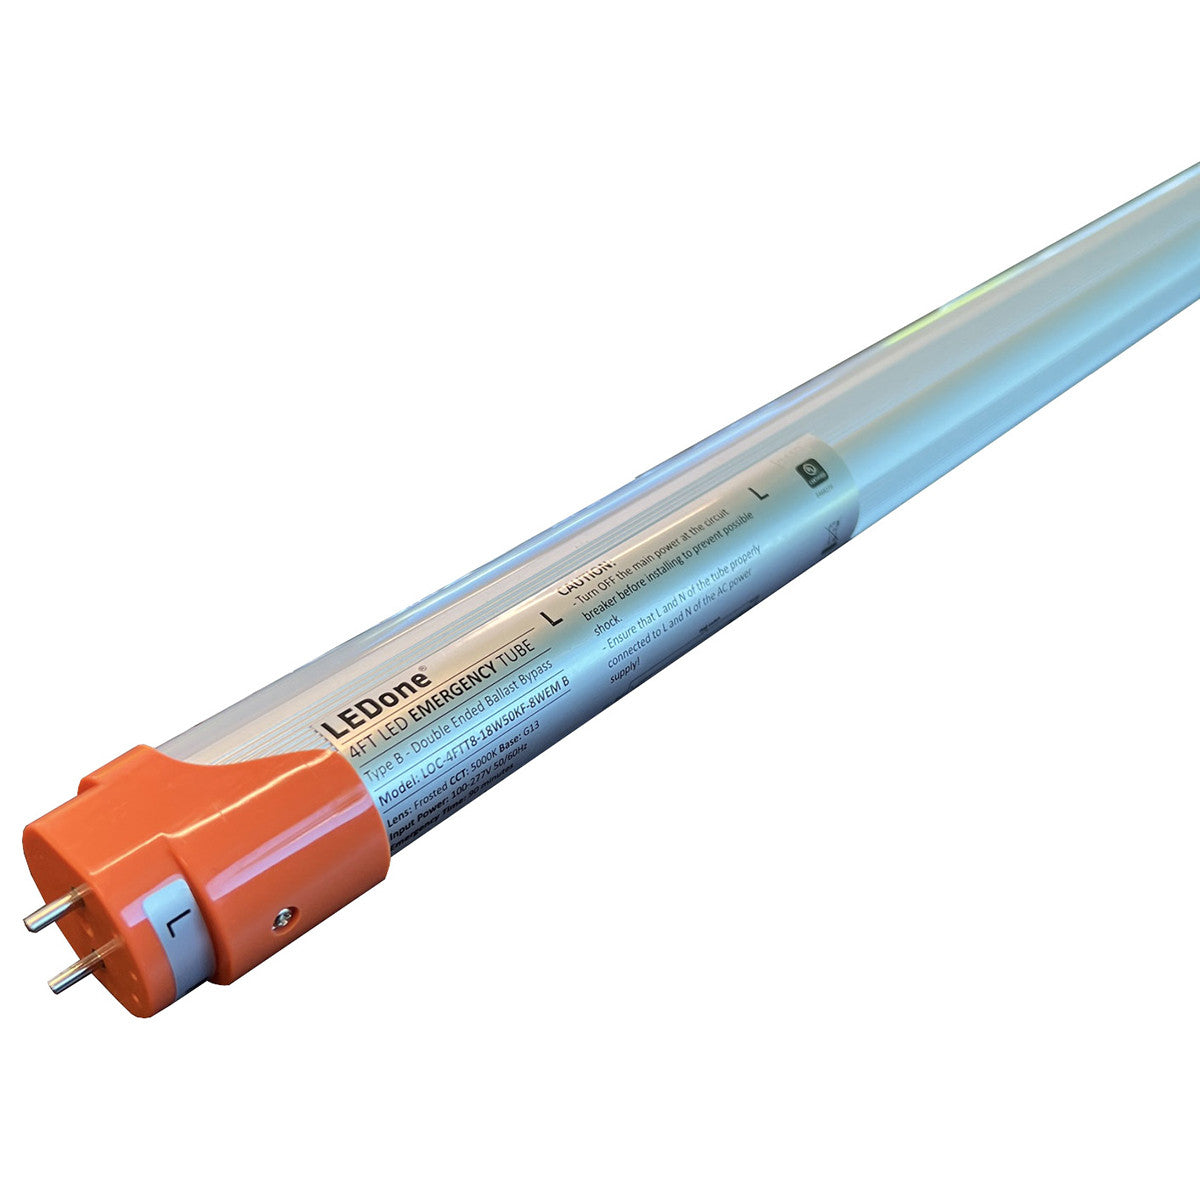 20Pk 4 ft. T8 LED Tube With Emergency Battery, 18W, 2,200 Lumens, 4000K or 5000K CCT, 120-277V